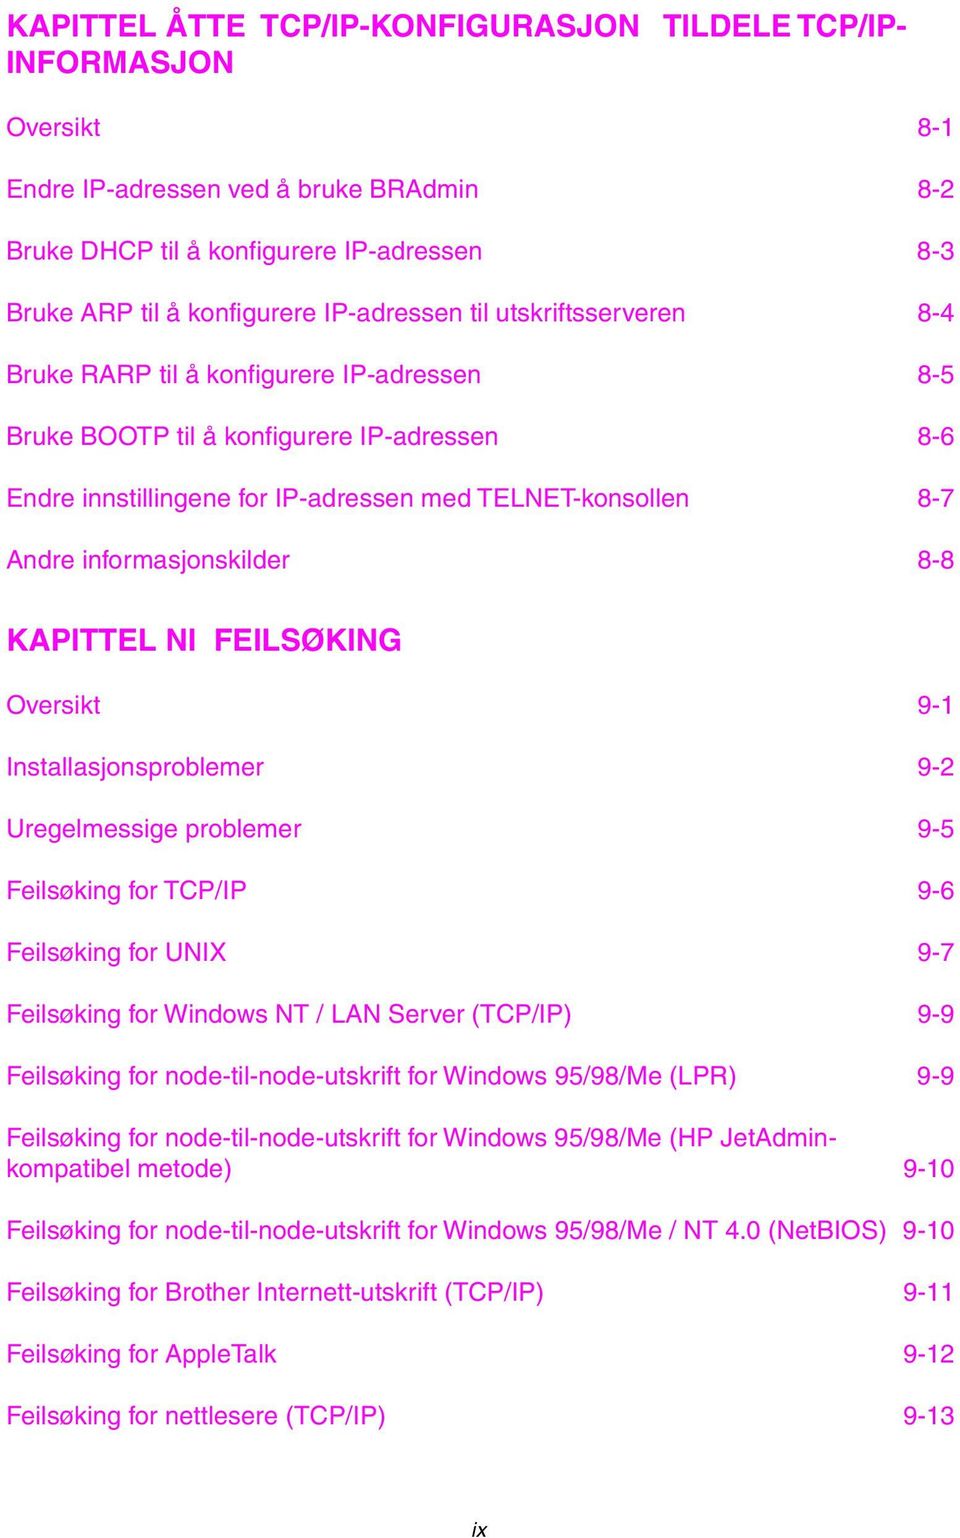 informasjonskilder 8-8 KAPITTEL NI FEILSØKING Oversikt 9-1 Installasjonsproblemer 9-2 Uregelmessige problemer 9-5 Feilsøking for TCP/IP 9-6 Feilsøking for UNIX 9-7 Feilsøking for Windows NT / LAN